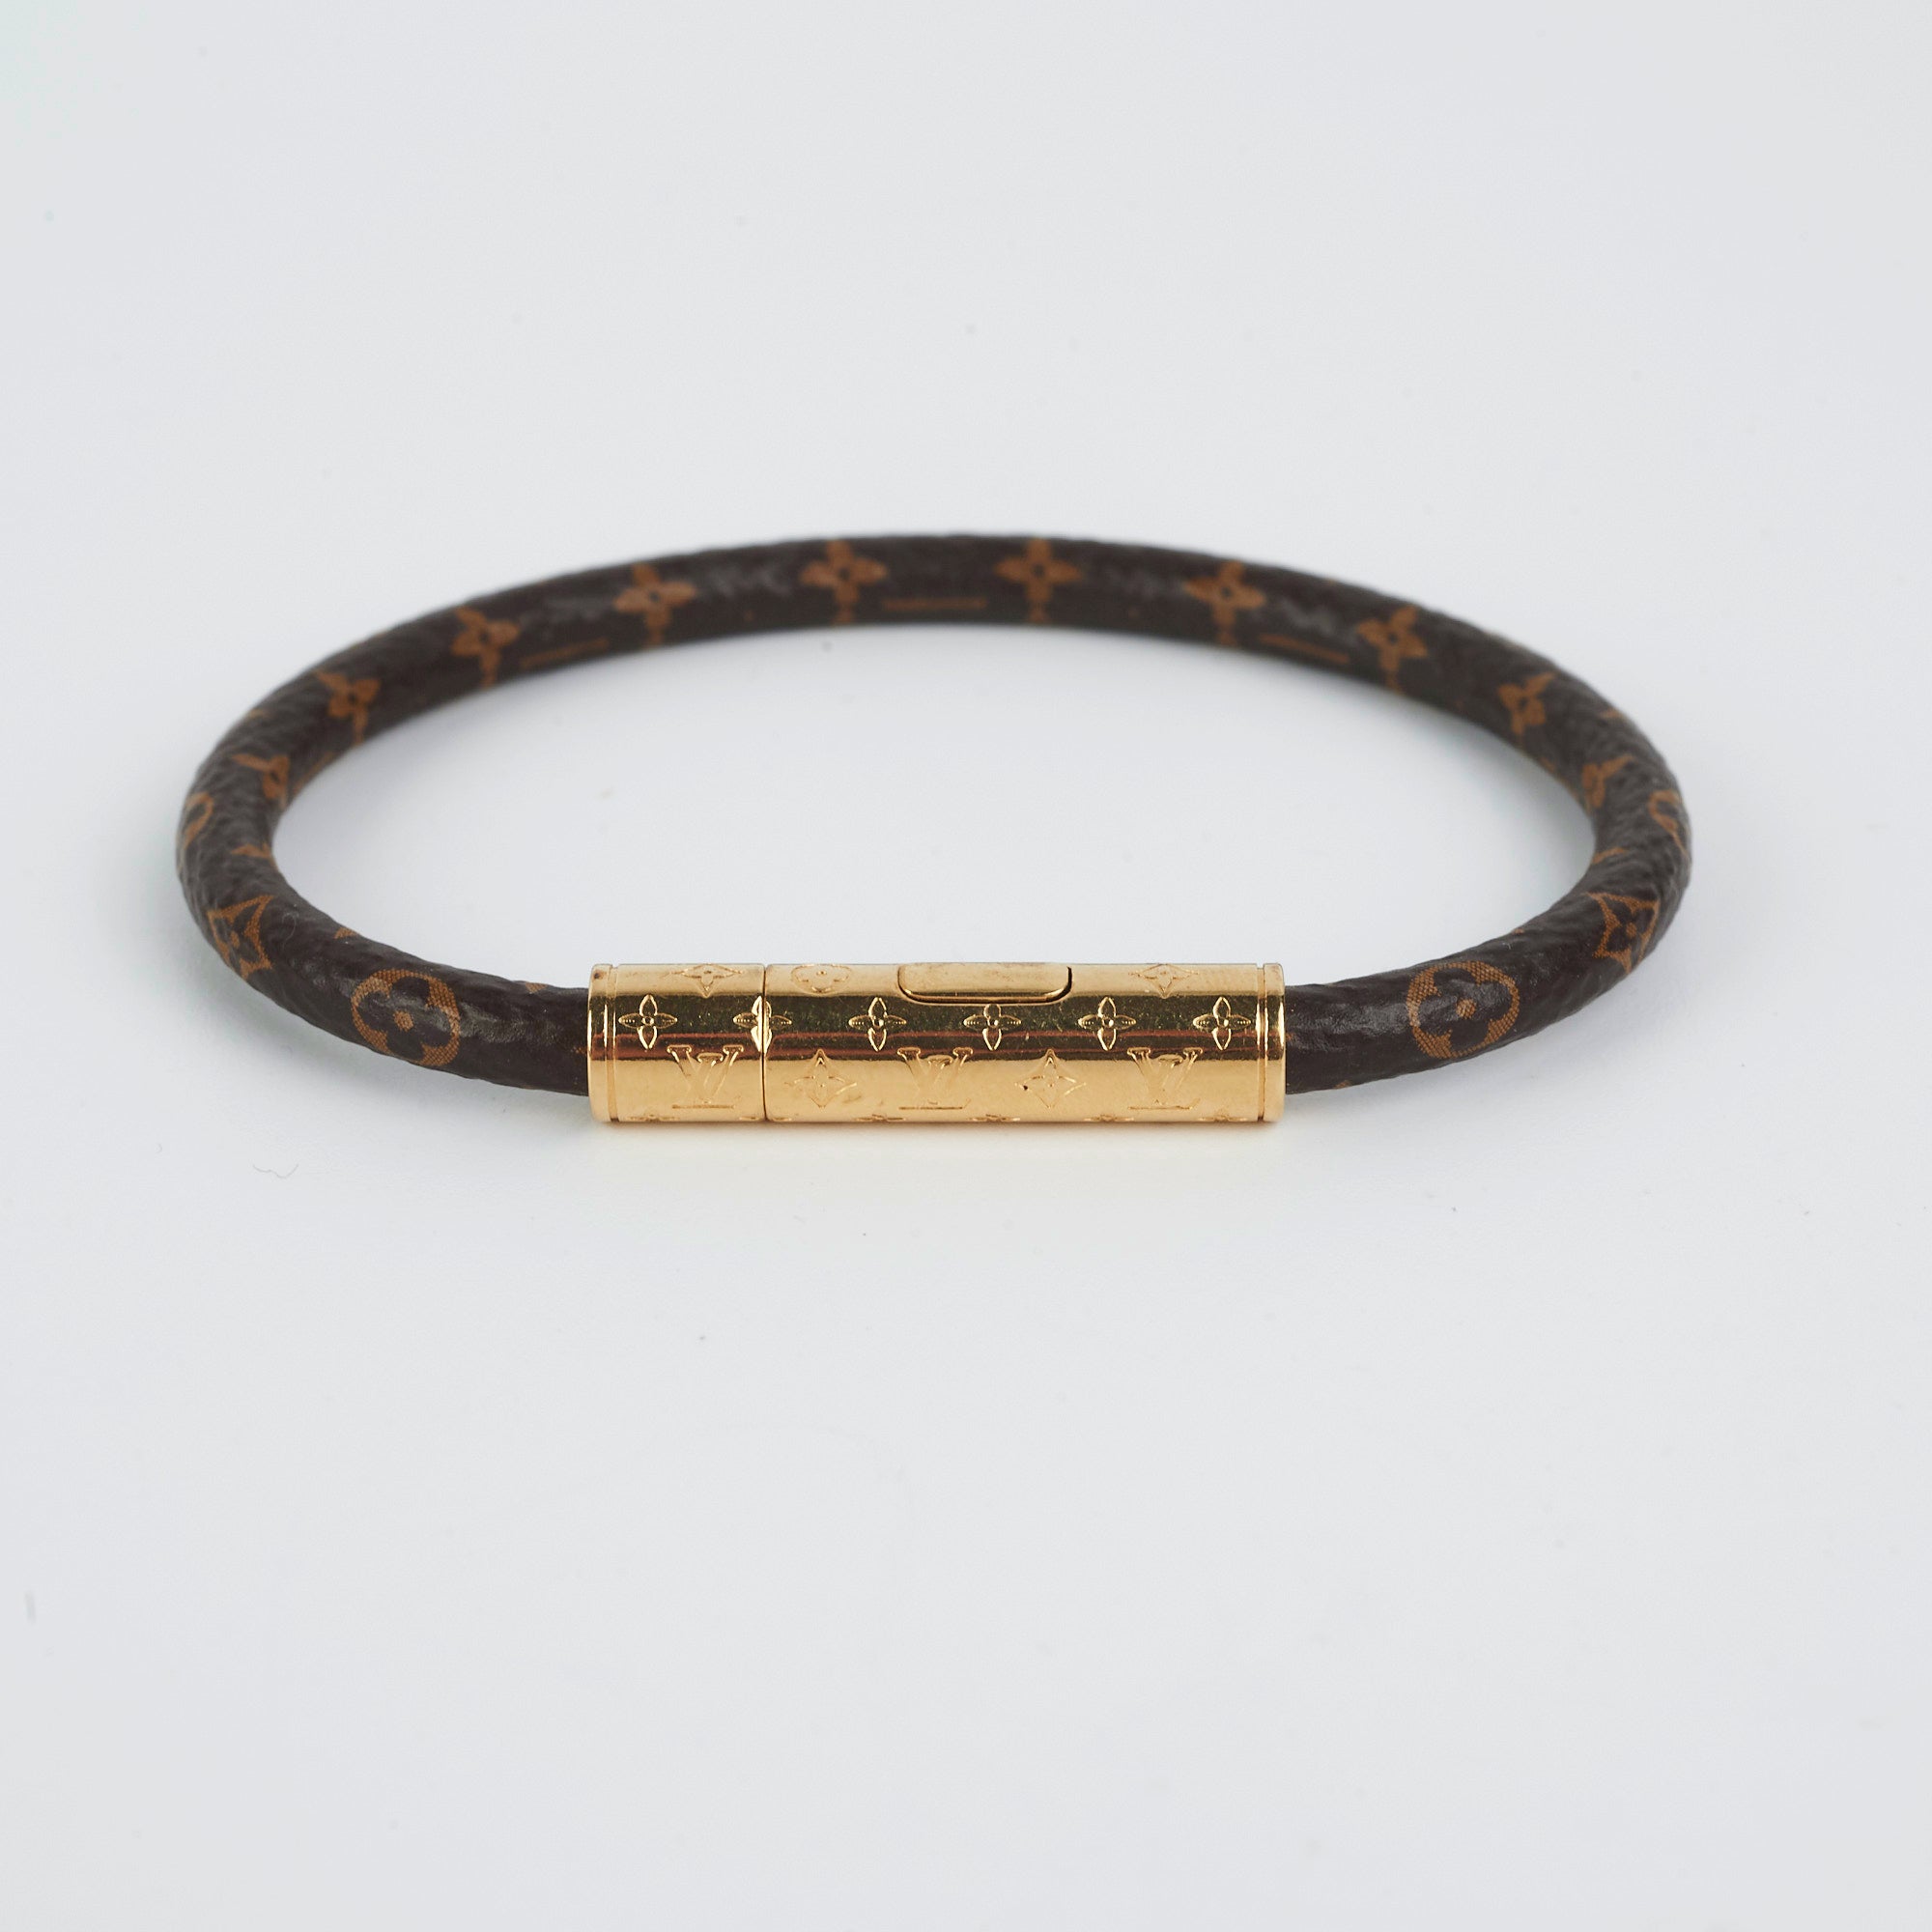 Louis Vuitton - Daily Confidential Bracelet - Monogram - Black - Size: 19 - Luxury